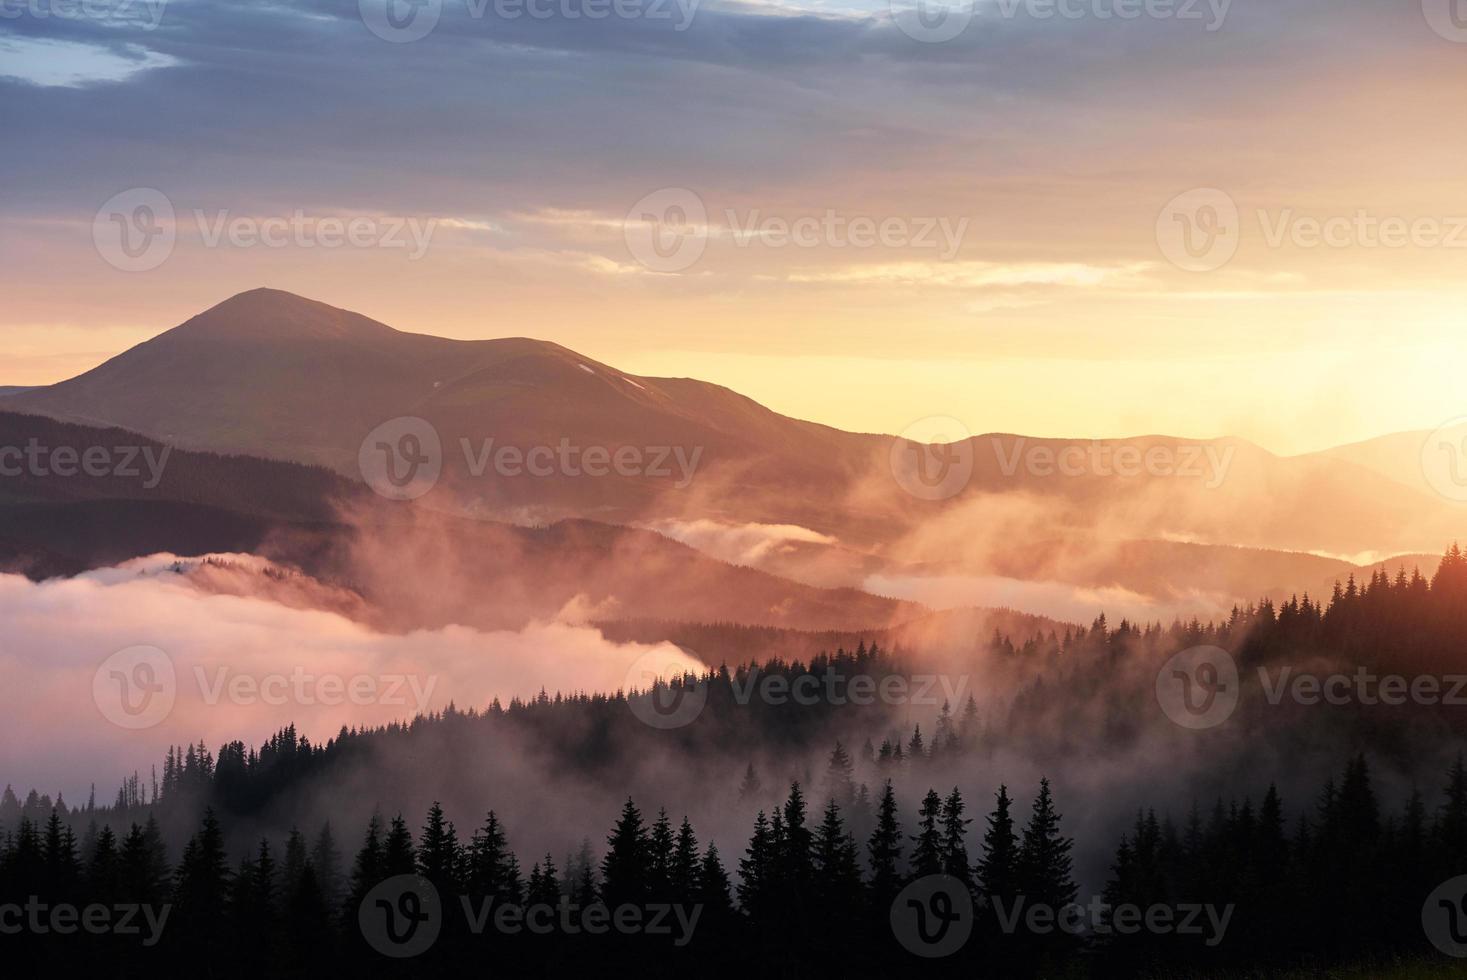 prachtige zonsondergang in de bergen. landschap met zonlicht schijnt door oranje wolken en mist foto